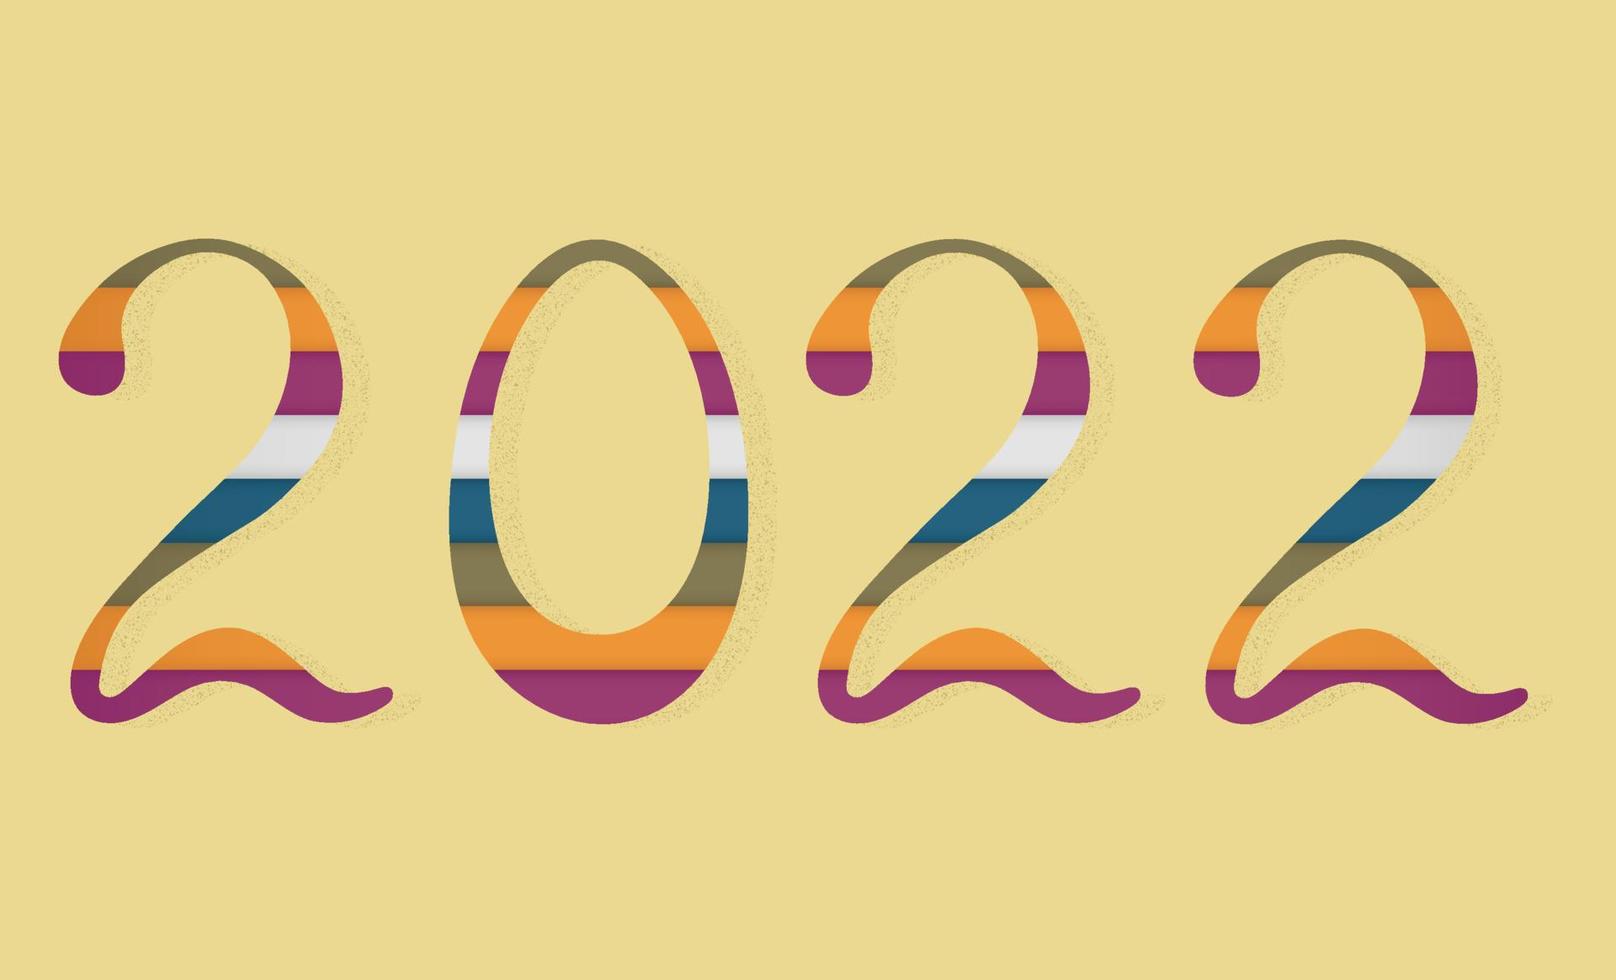 2022 kalligrafisk inskription i trendiga färger för det nya året. 3-d skuggade siffror fyllda med färgade remsor i stil med klippt papper. vektor illustration